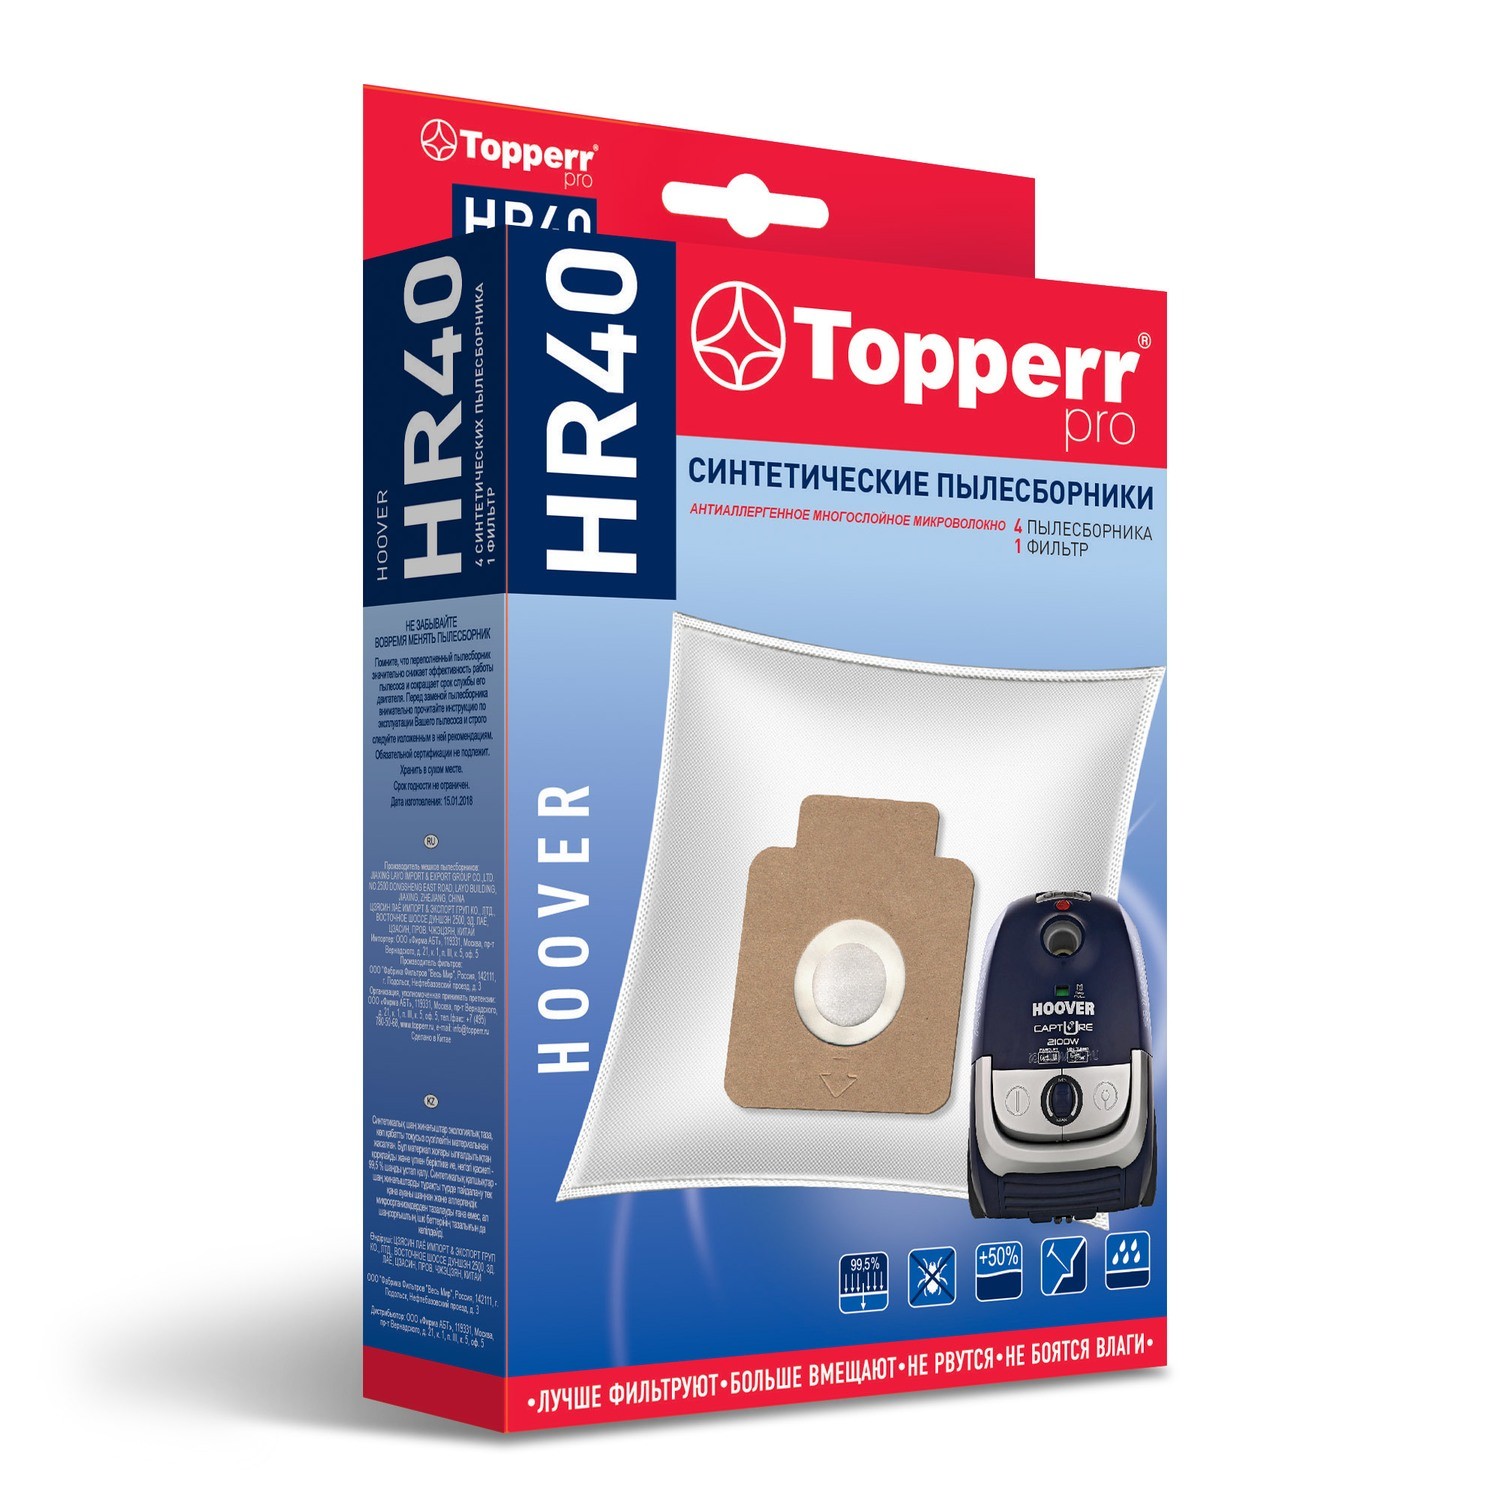 Пылесборник Topperr HR 40 пылесборники бумажные topperr vx 5 4шт